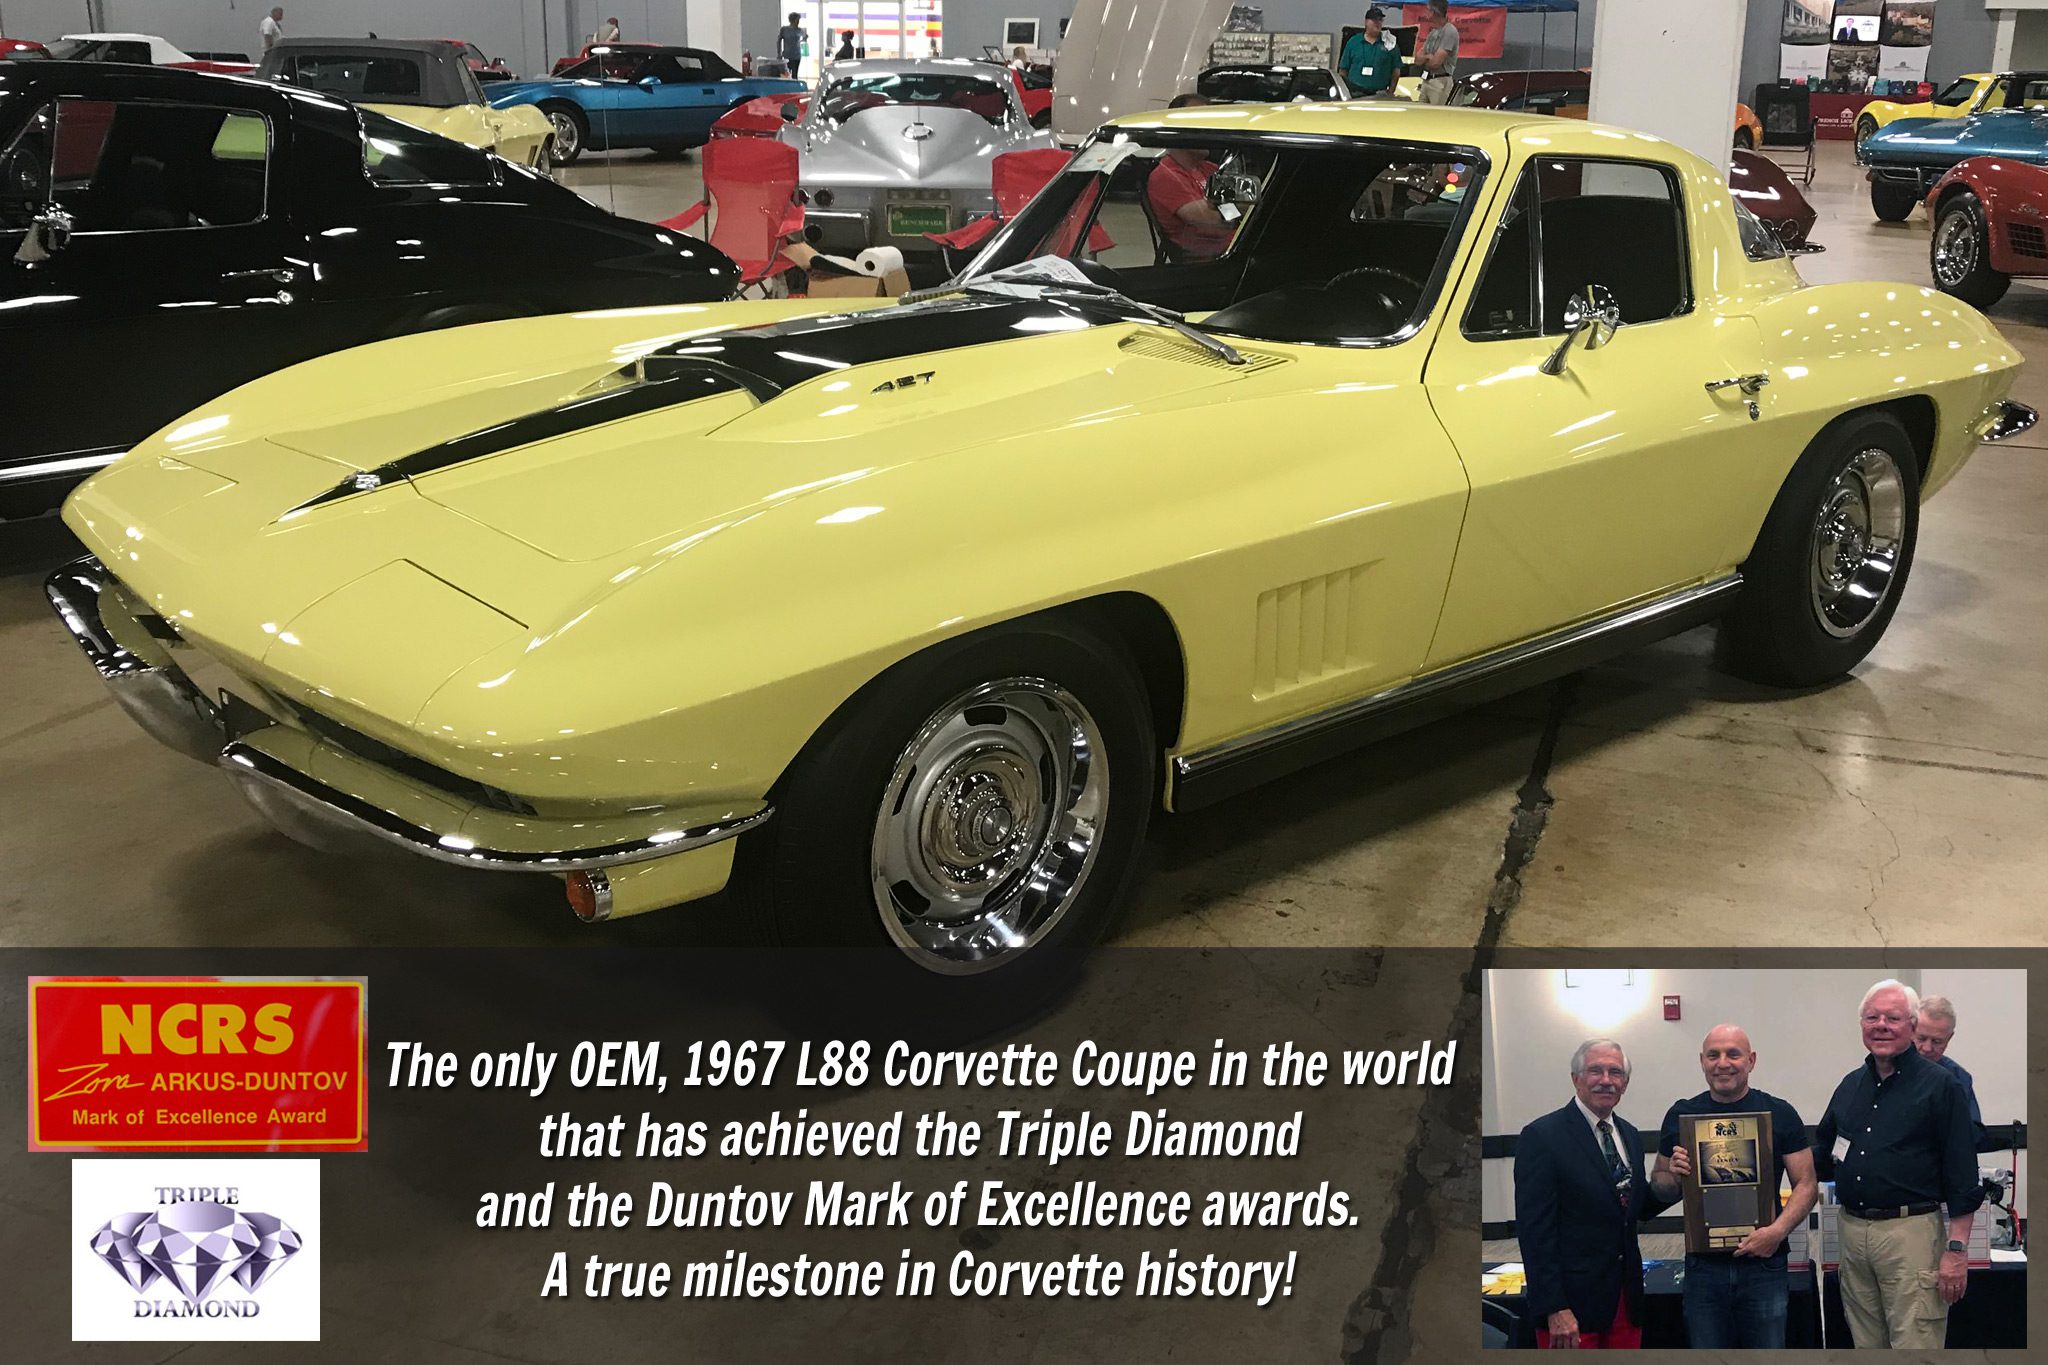 1967 Award Winning Corvette